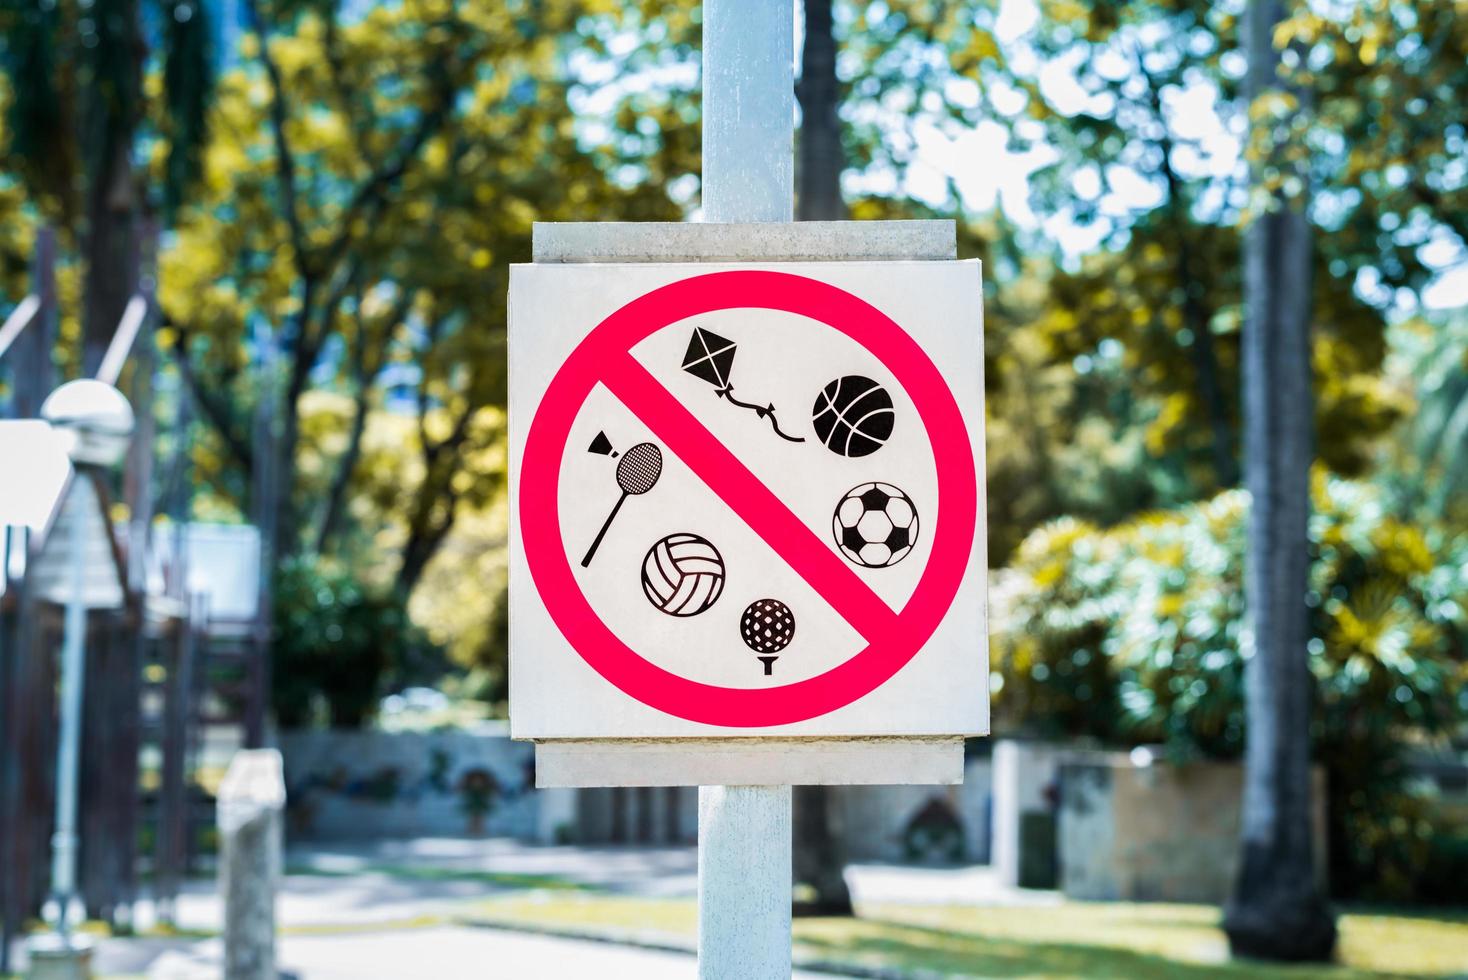 Todos los deportes están prohibidos en el parque. señales que prohíben todos los deportes en el parque. foto